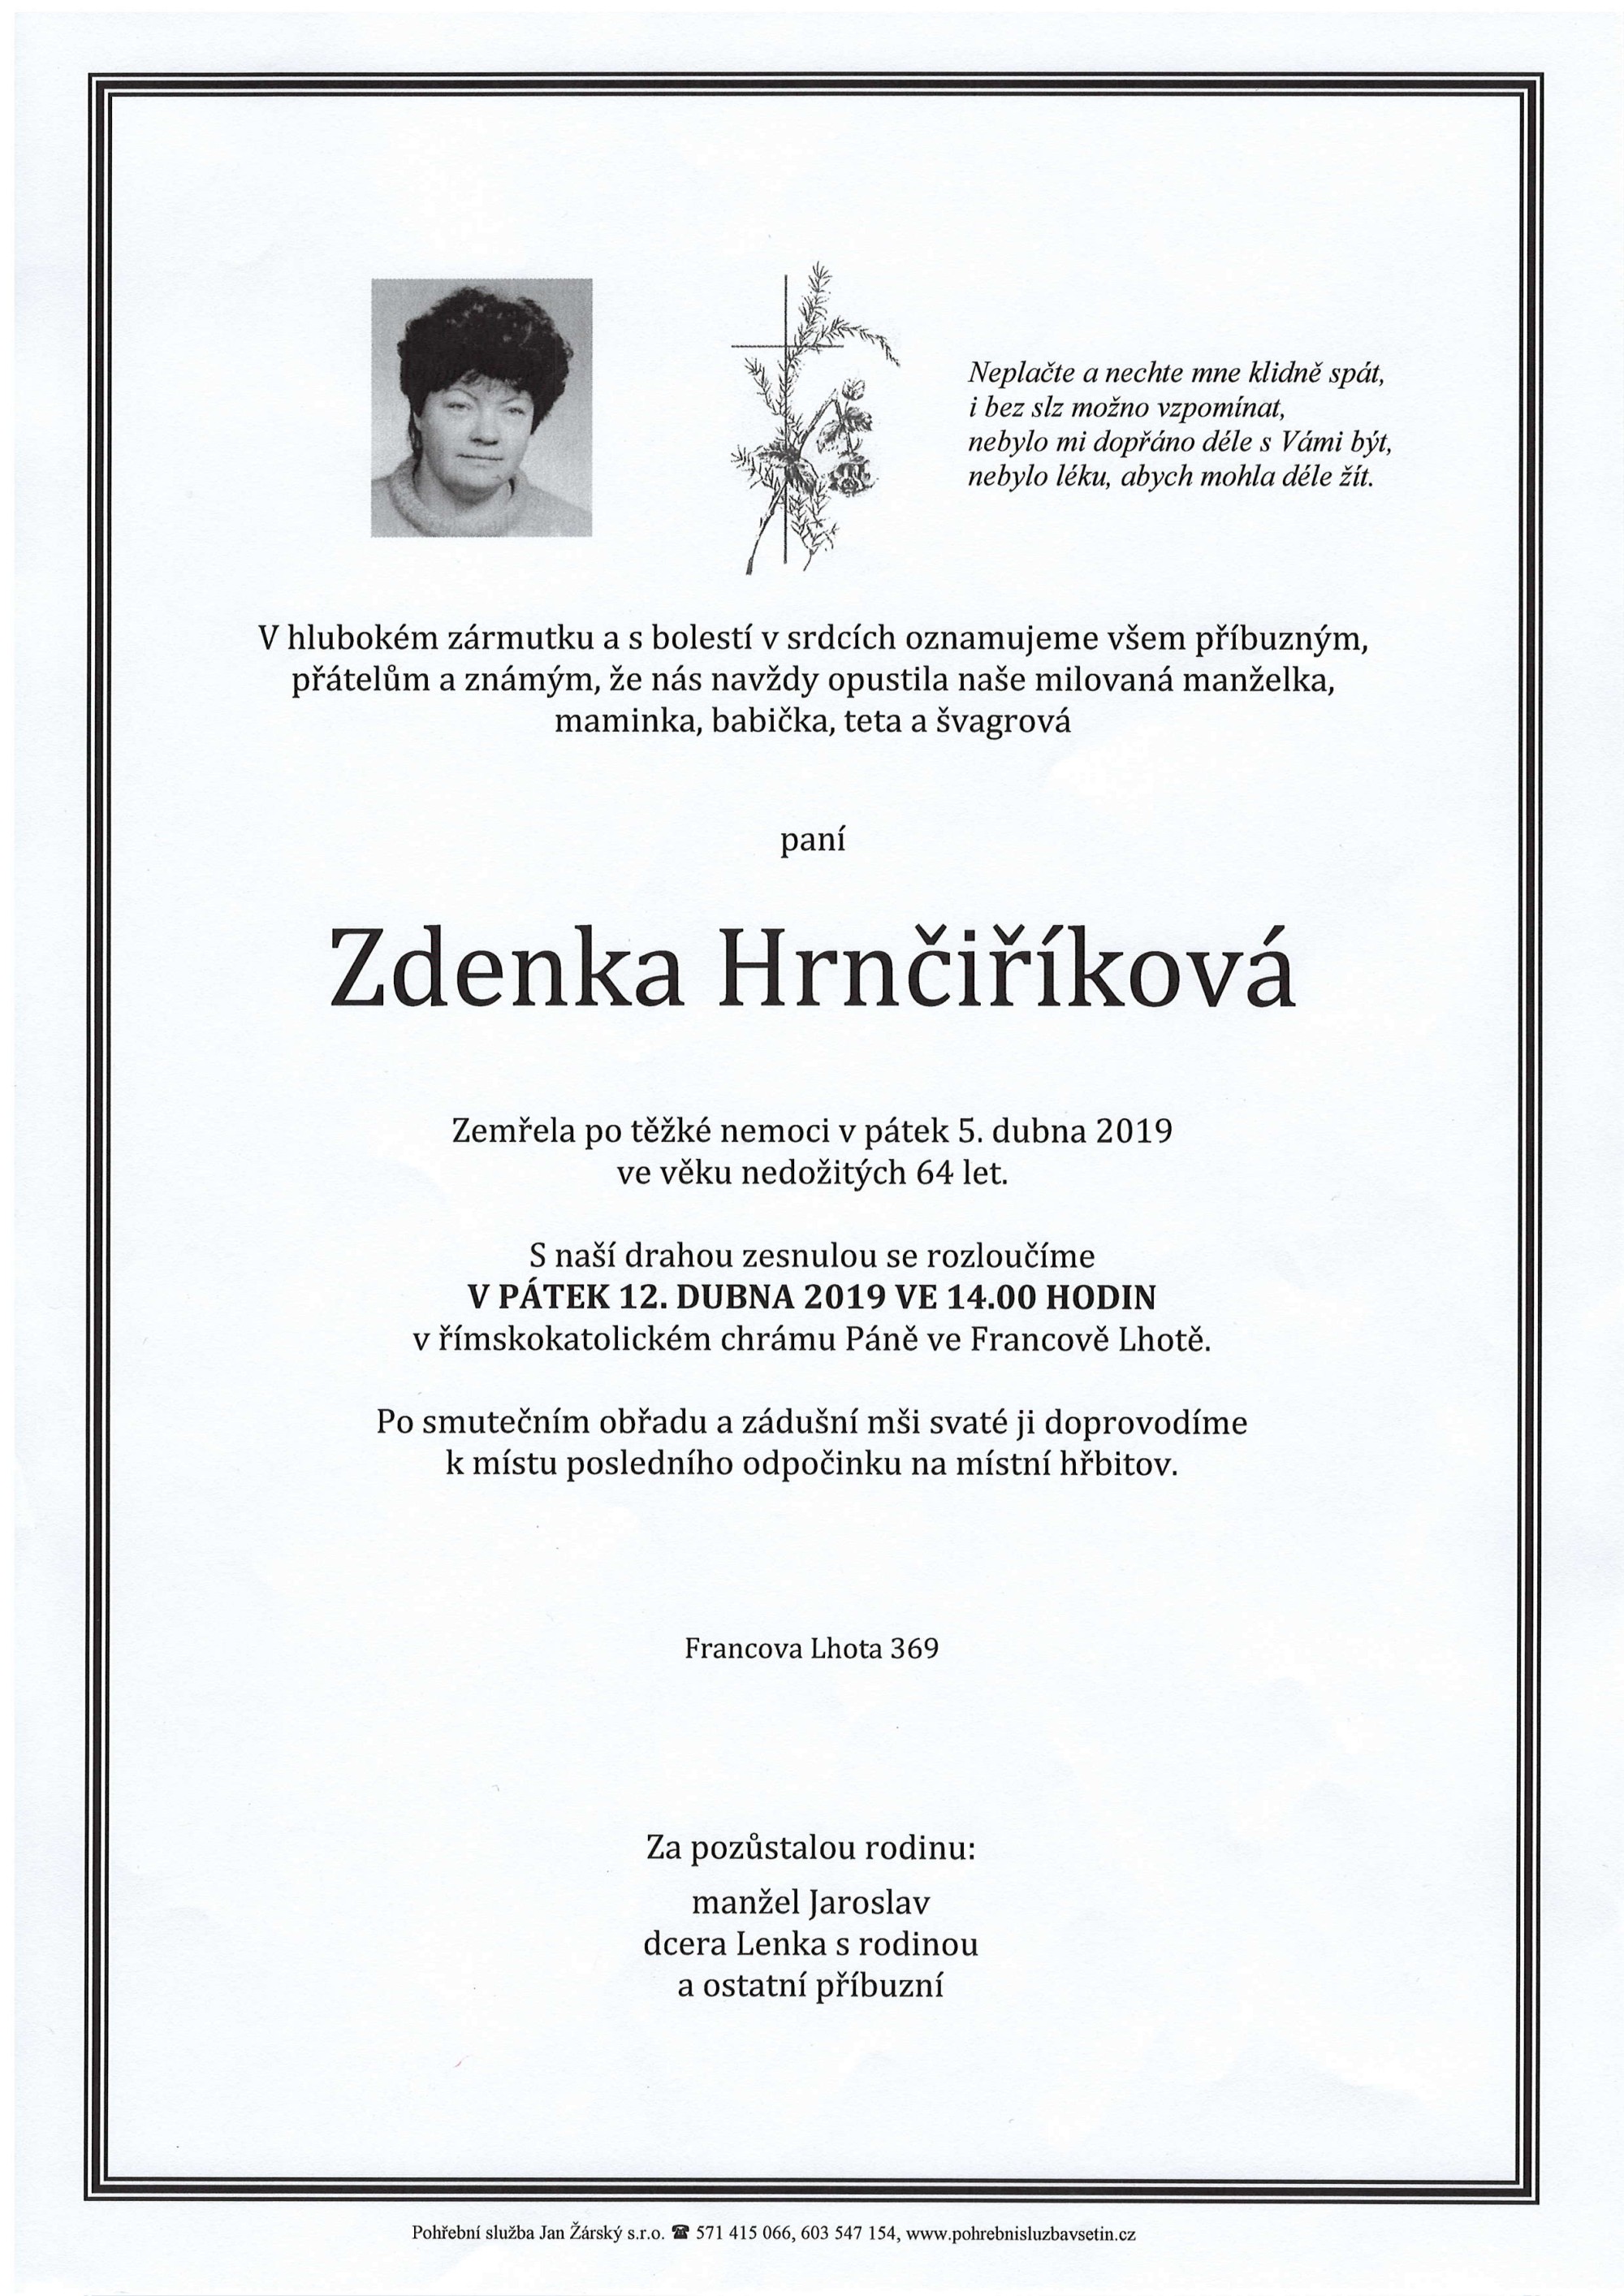 Zdenka Hrnčiříková